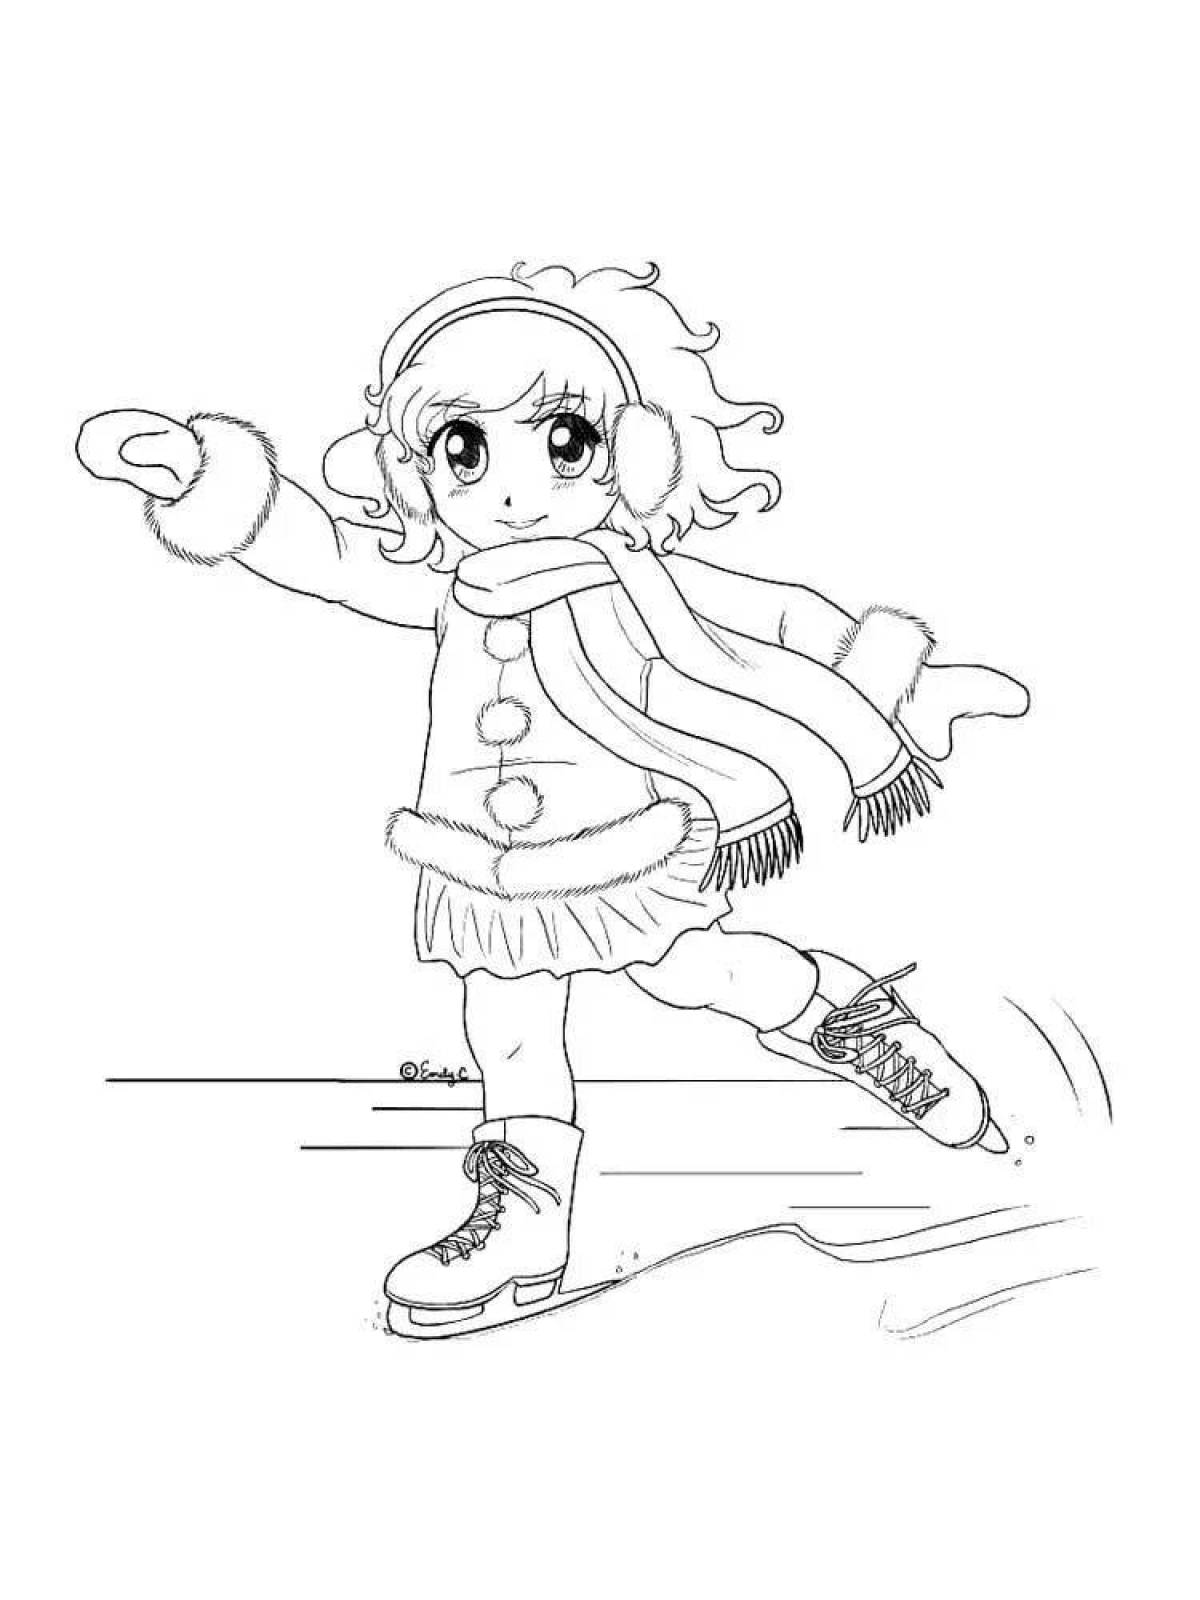 Skating girl #4